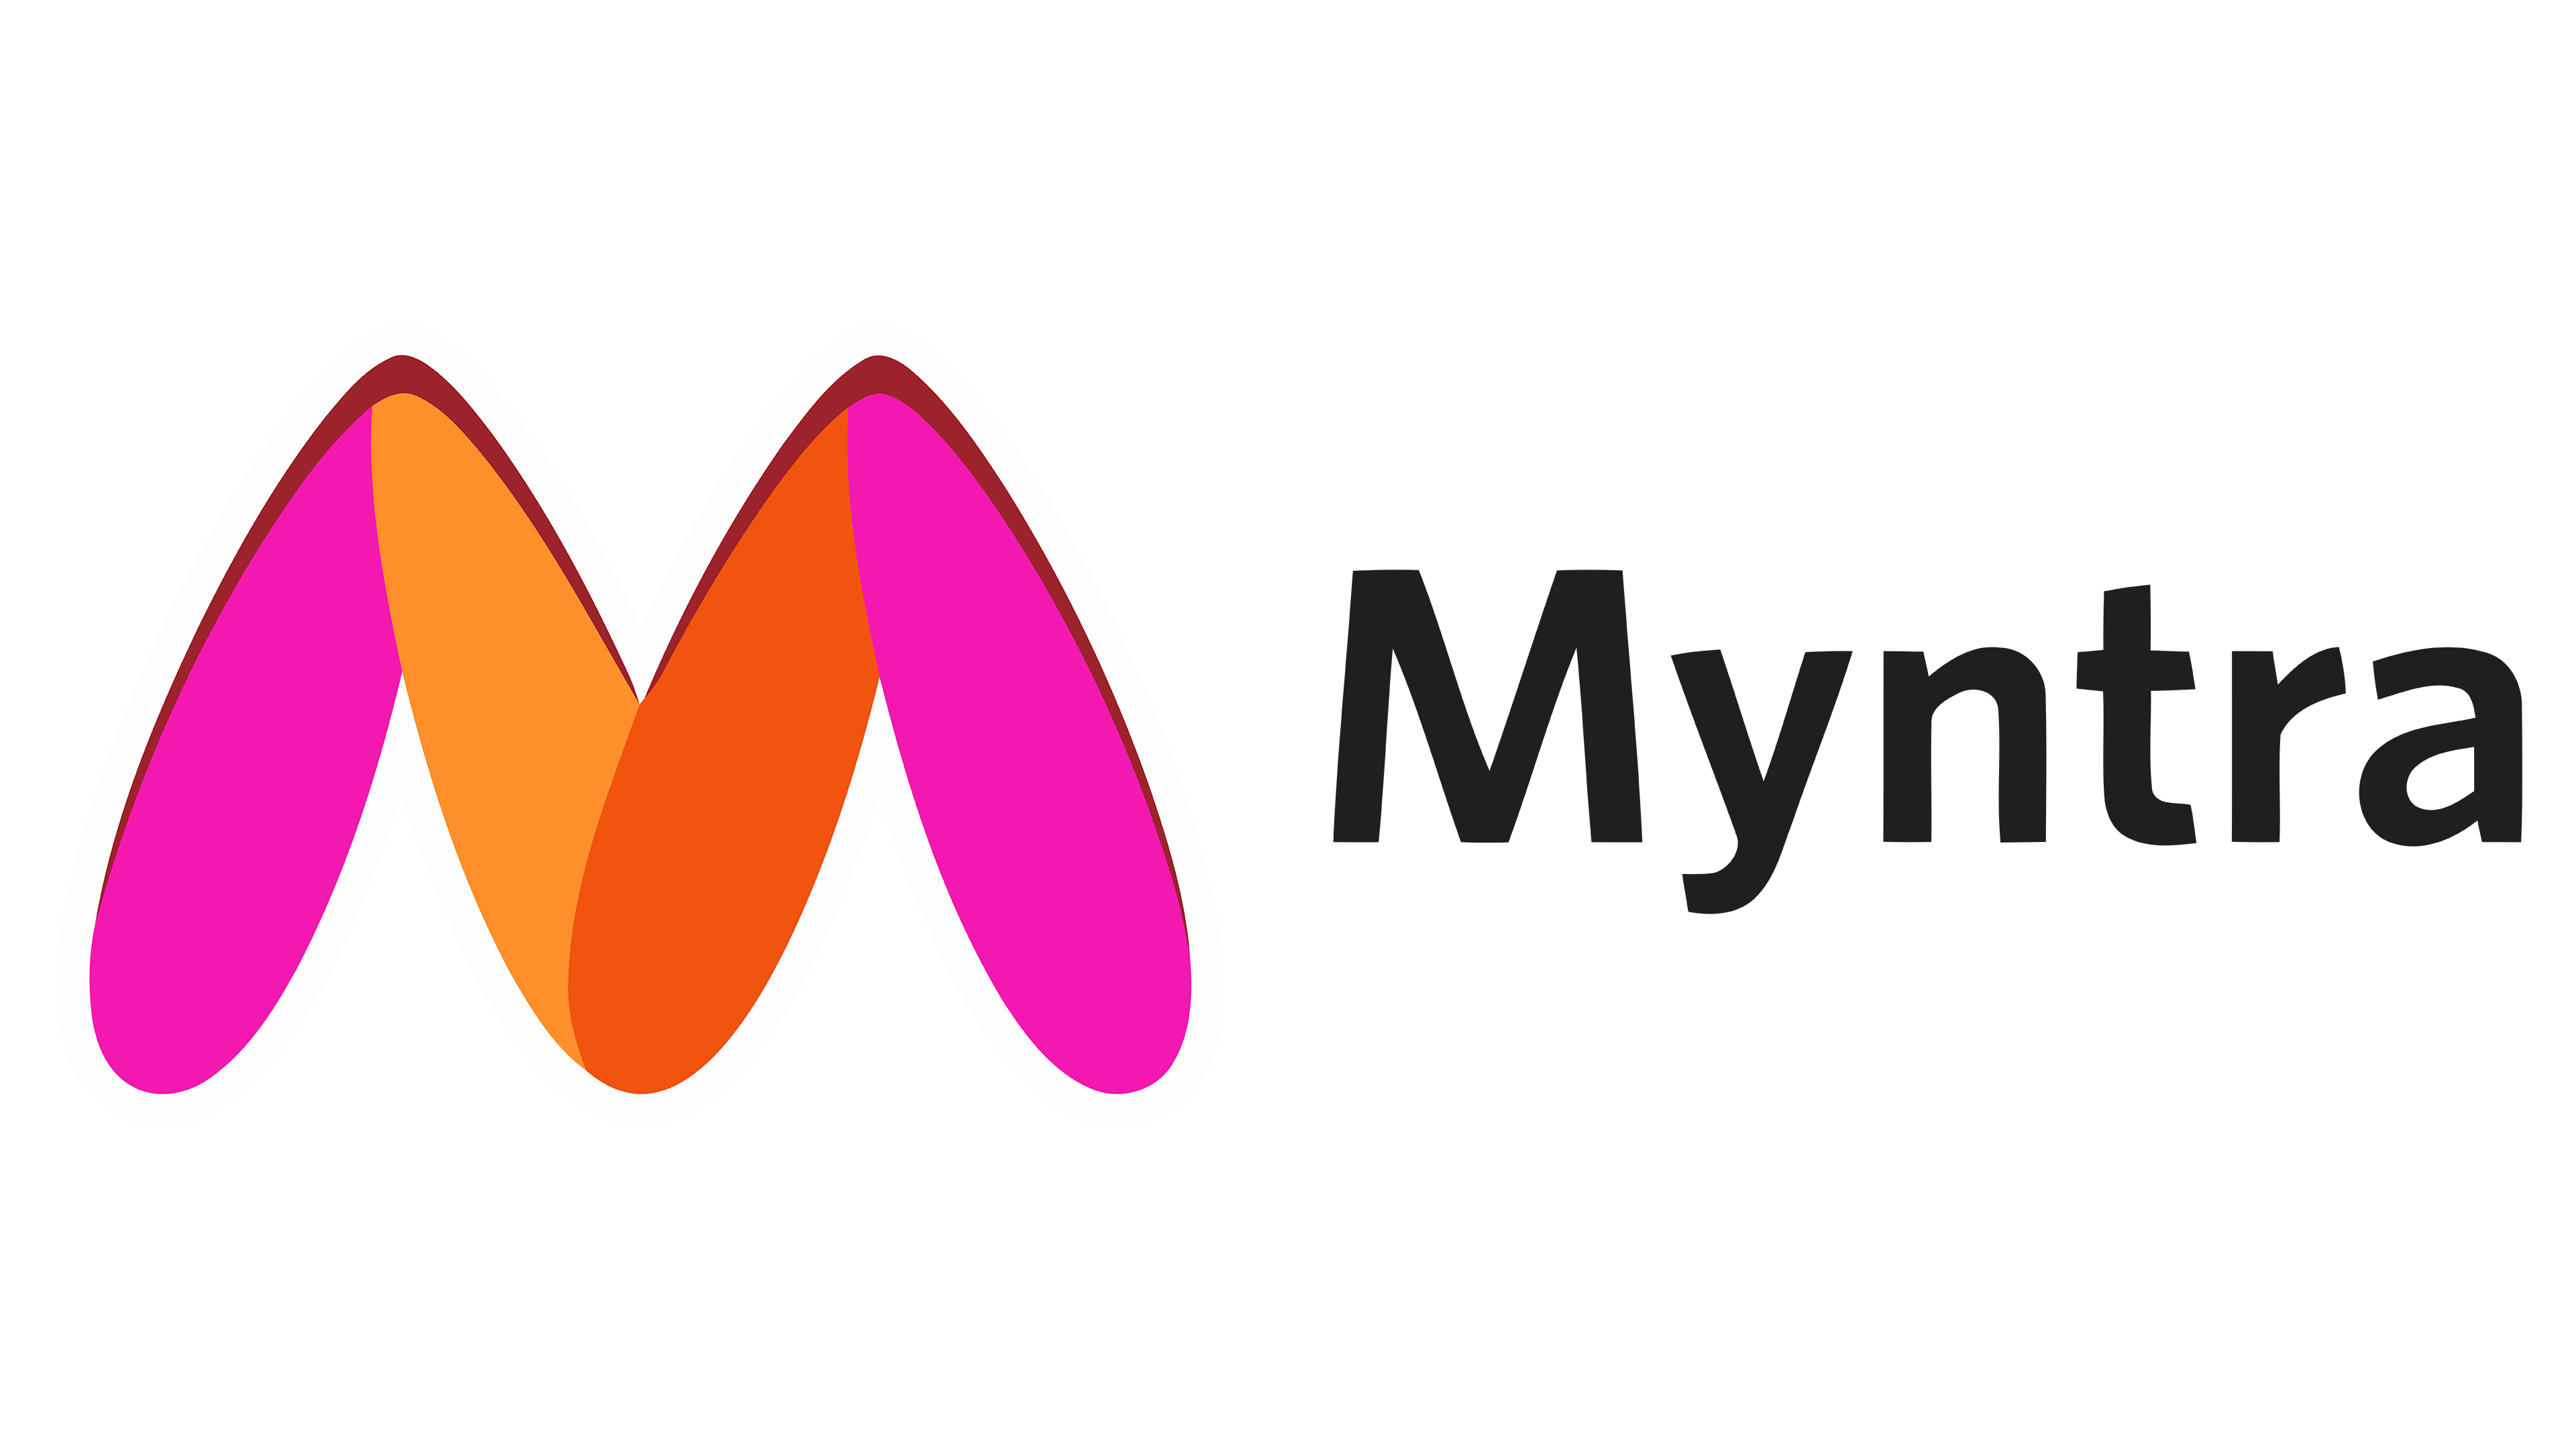 Myntra company logo